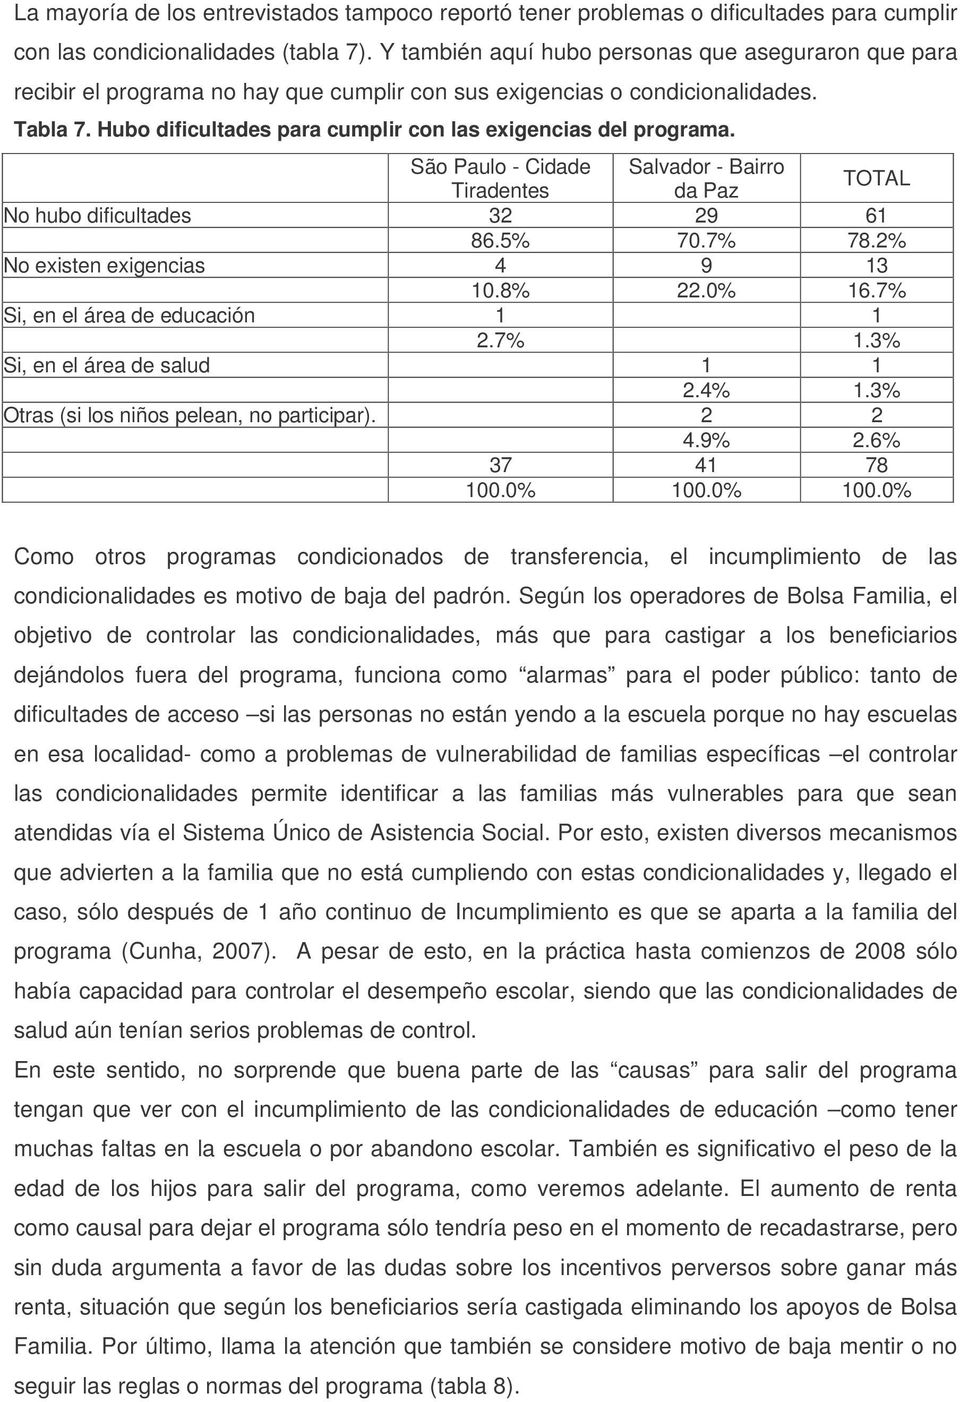 Hubo dificultades para cumplir con las exigencias del programa. São Paulo - Cidade Salvador - Bairro da Paz No hubo dificultades 32 29 61 86.5% 70.7% 78.2% No existen exigencias 4 9 13 10.8% 22.0% 16.